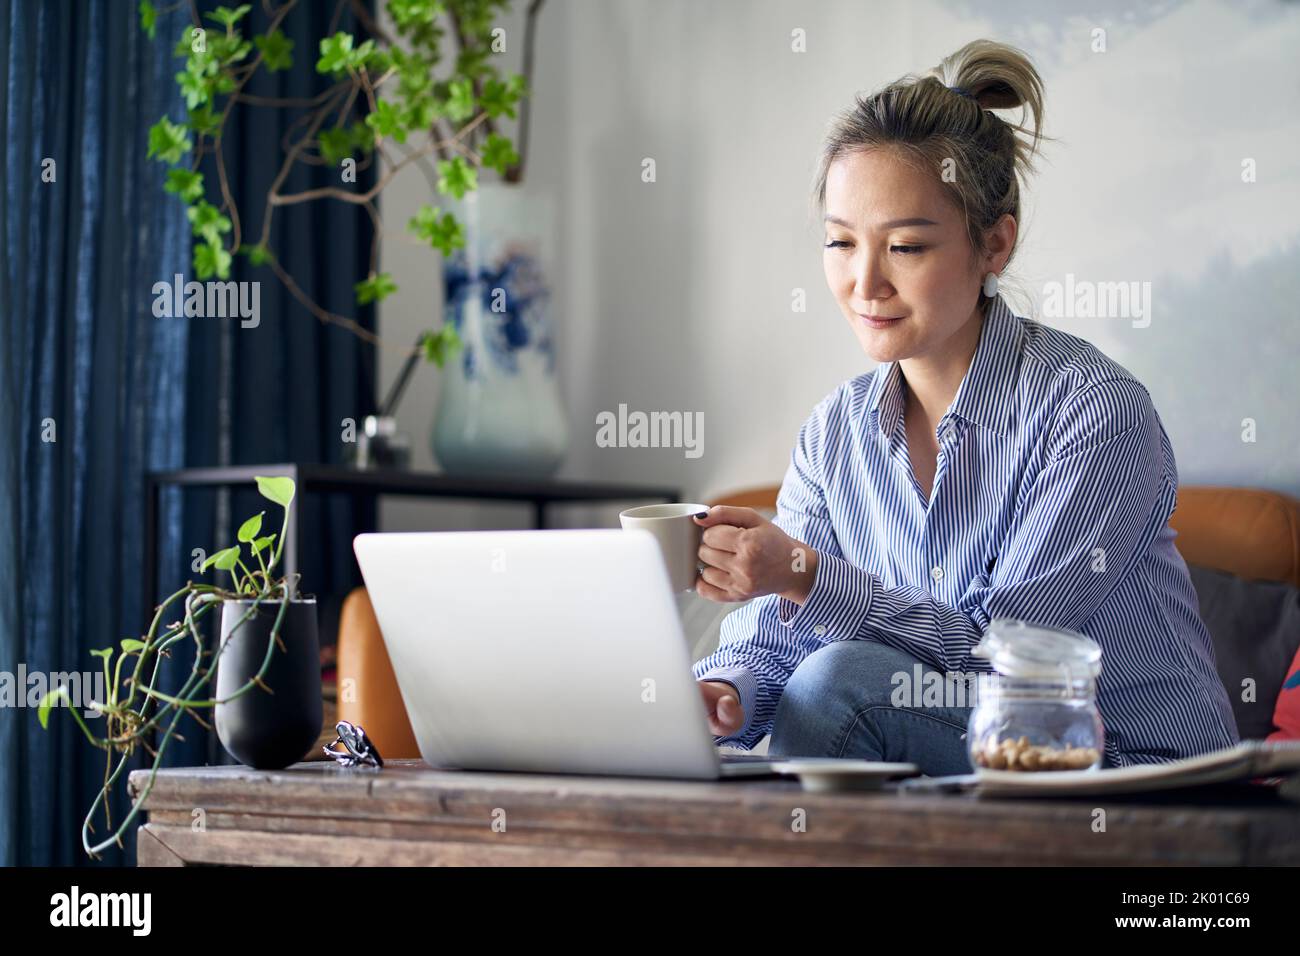 mujer asiática profesional madura que trabaja desde casa sentada en el sofá bebiendo café mientras mira la computadora portátil Foto de stock